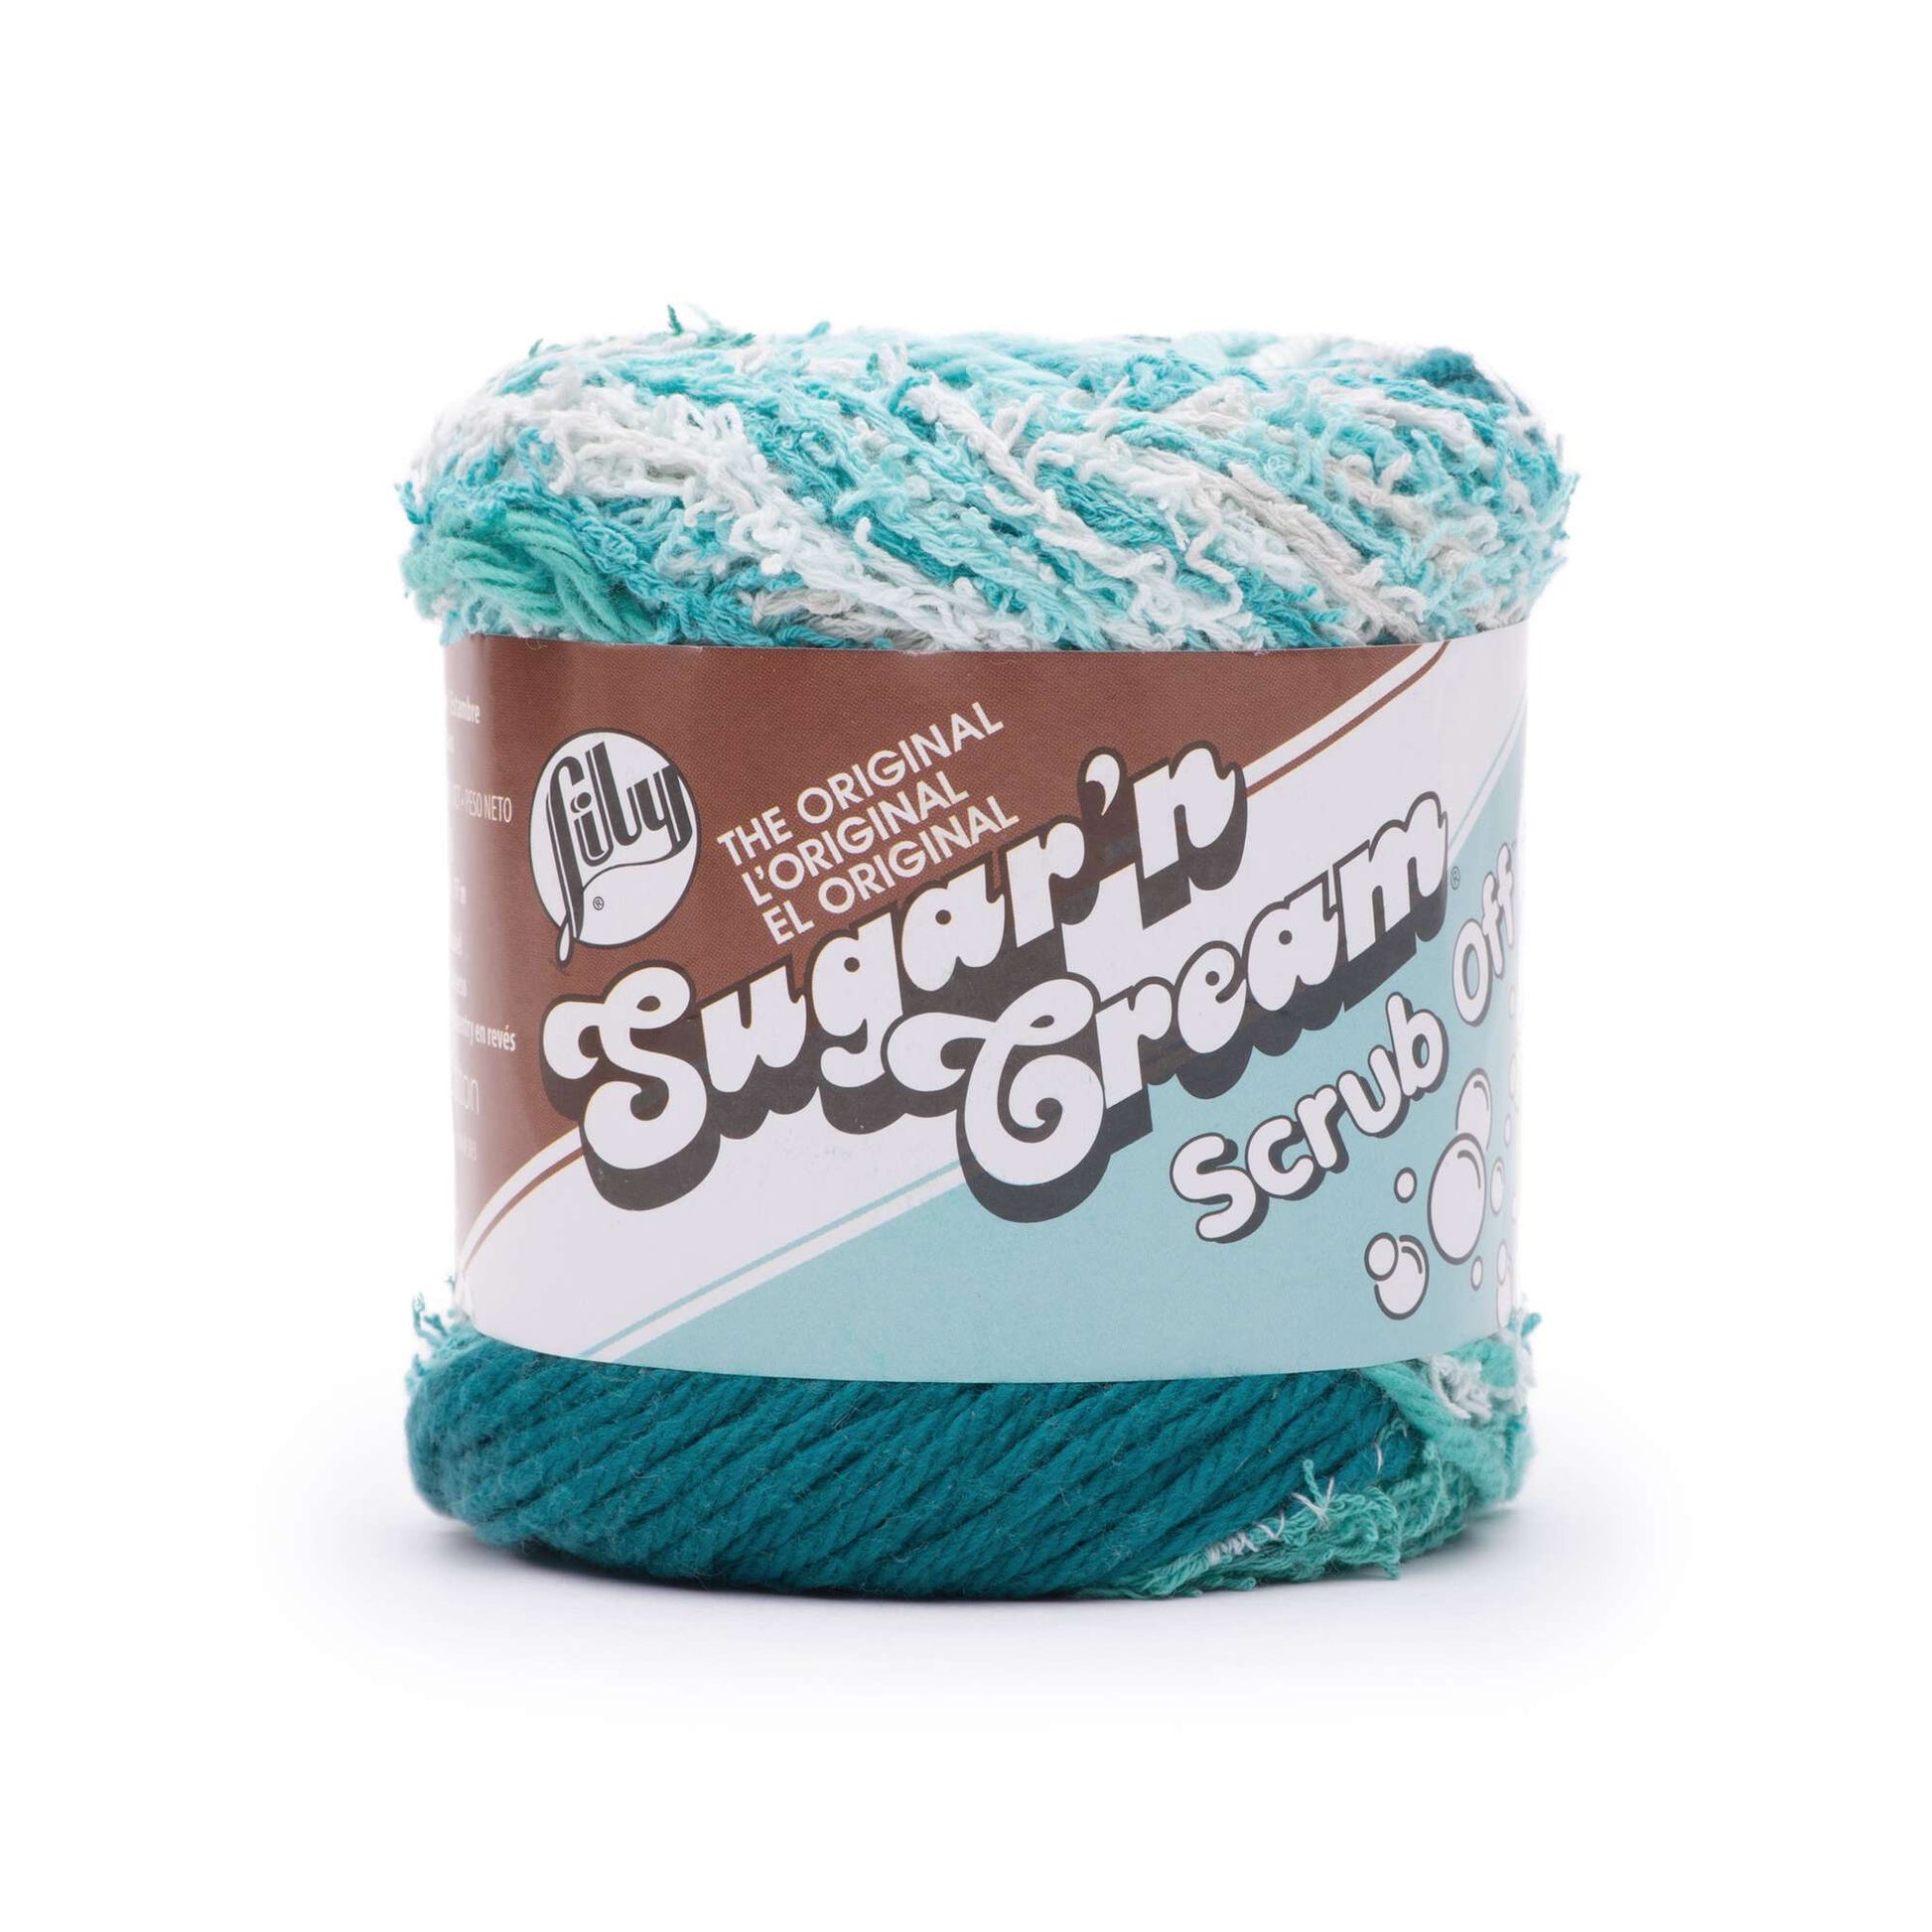 Tried the new Lily Sugar'n Cream Scrub Off yarn today. Loving